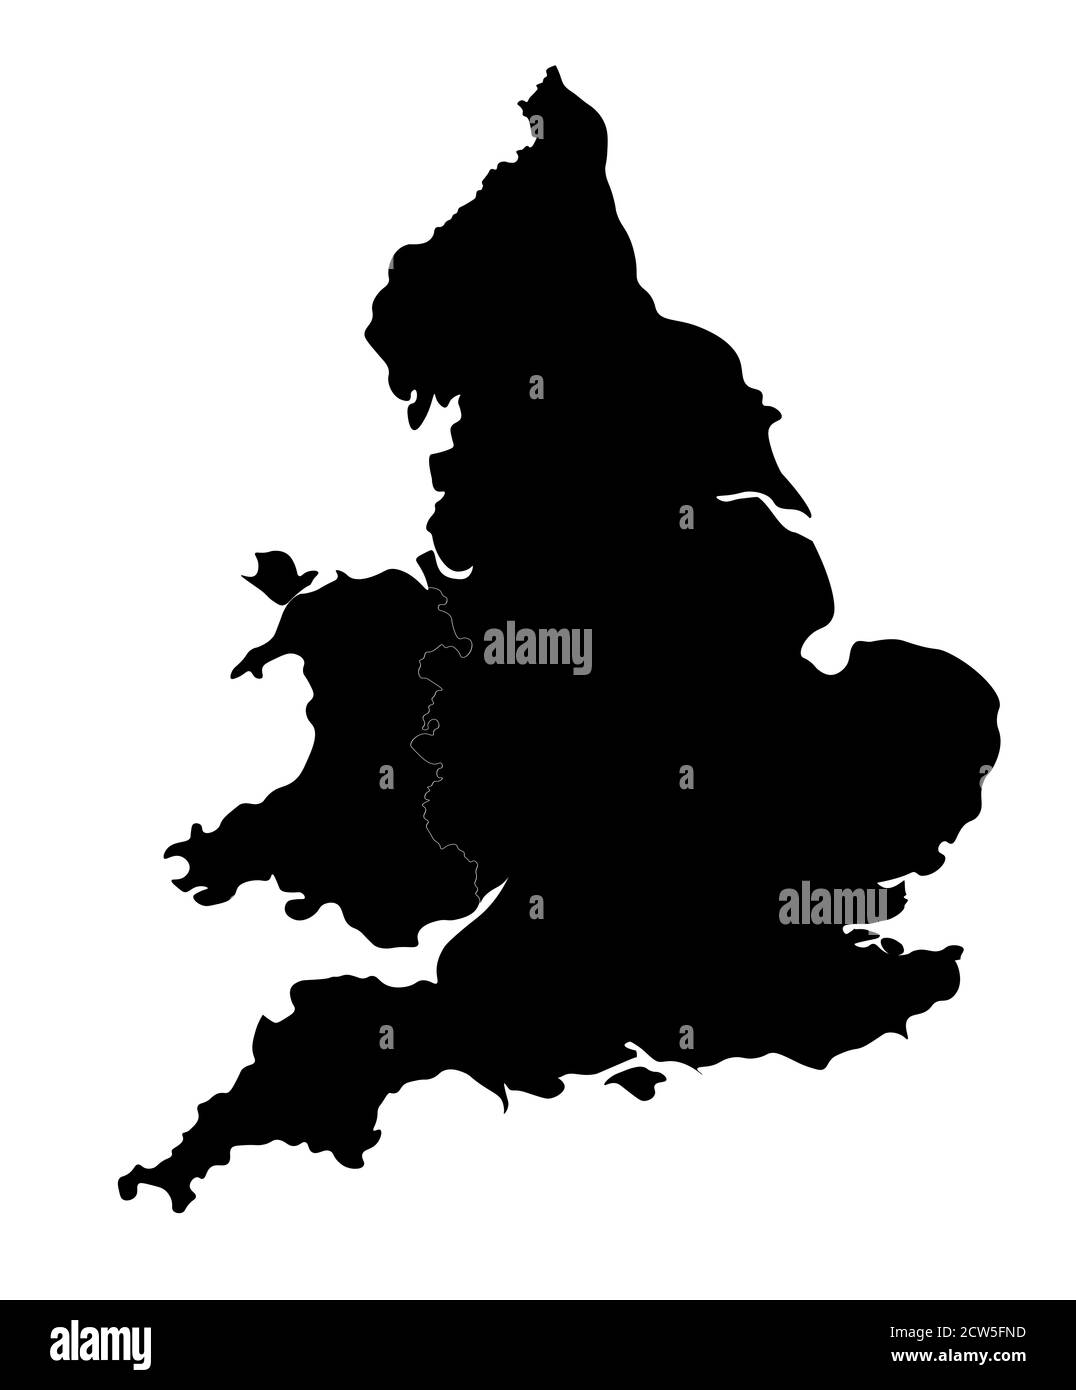 Silhouette de l'Angleterre et du pays de Galles. Carte bien conçue avec bords arrondis pour un look élégant. Banque D'Images